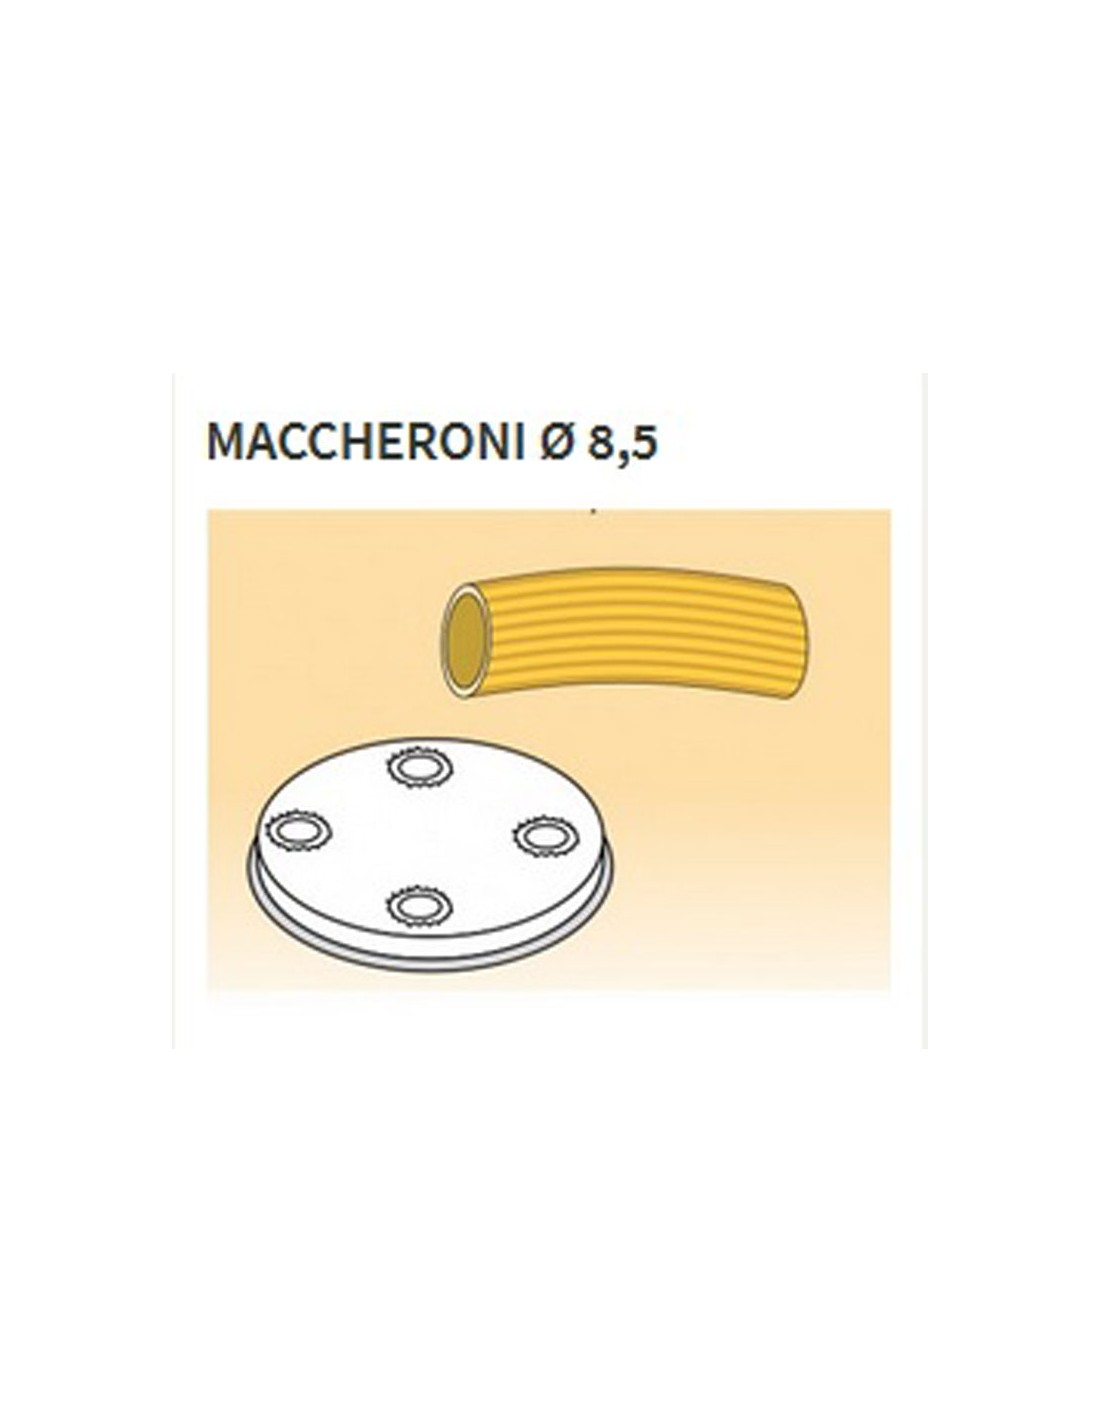 Trafile formati vari in lega ottone - Bronzo - Per macchina pasta fresca modello MPF15 - Maccheroni Ø mm 8.5